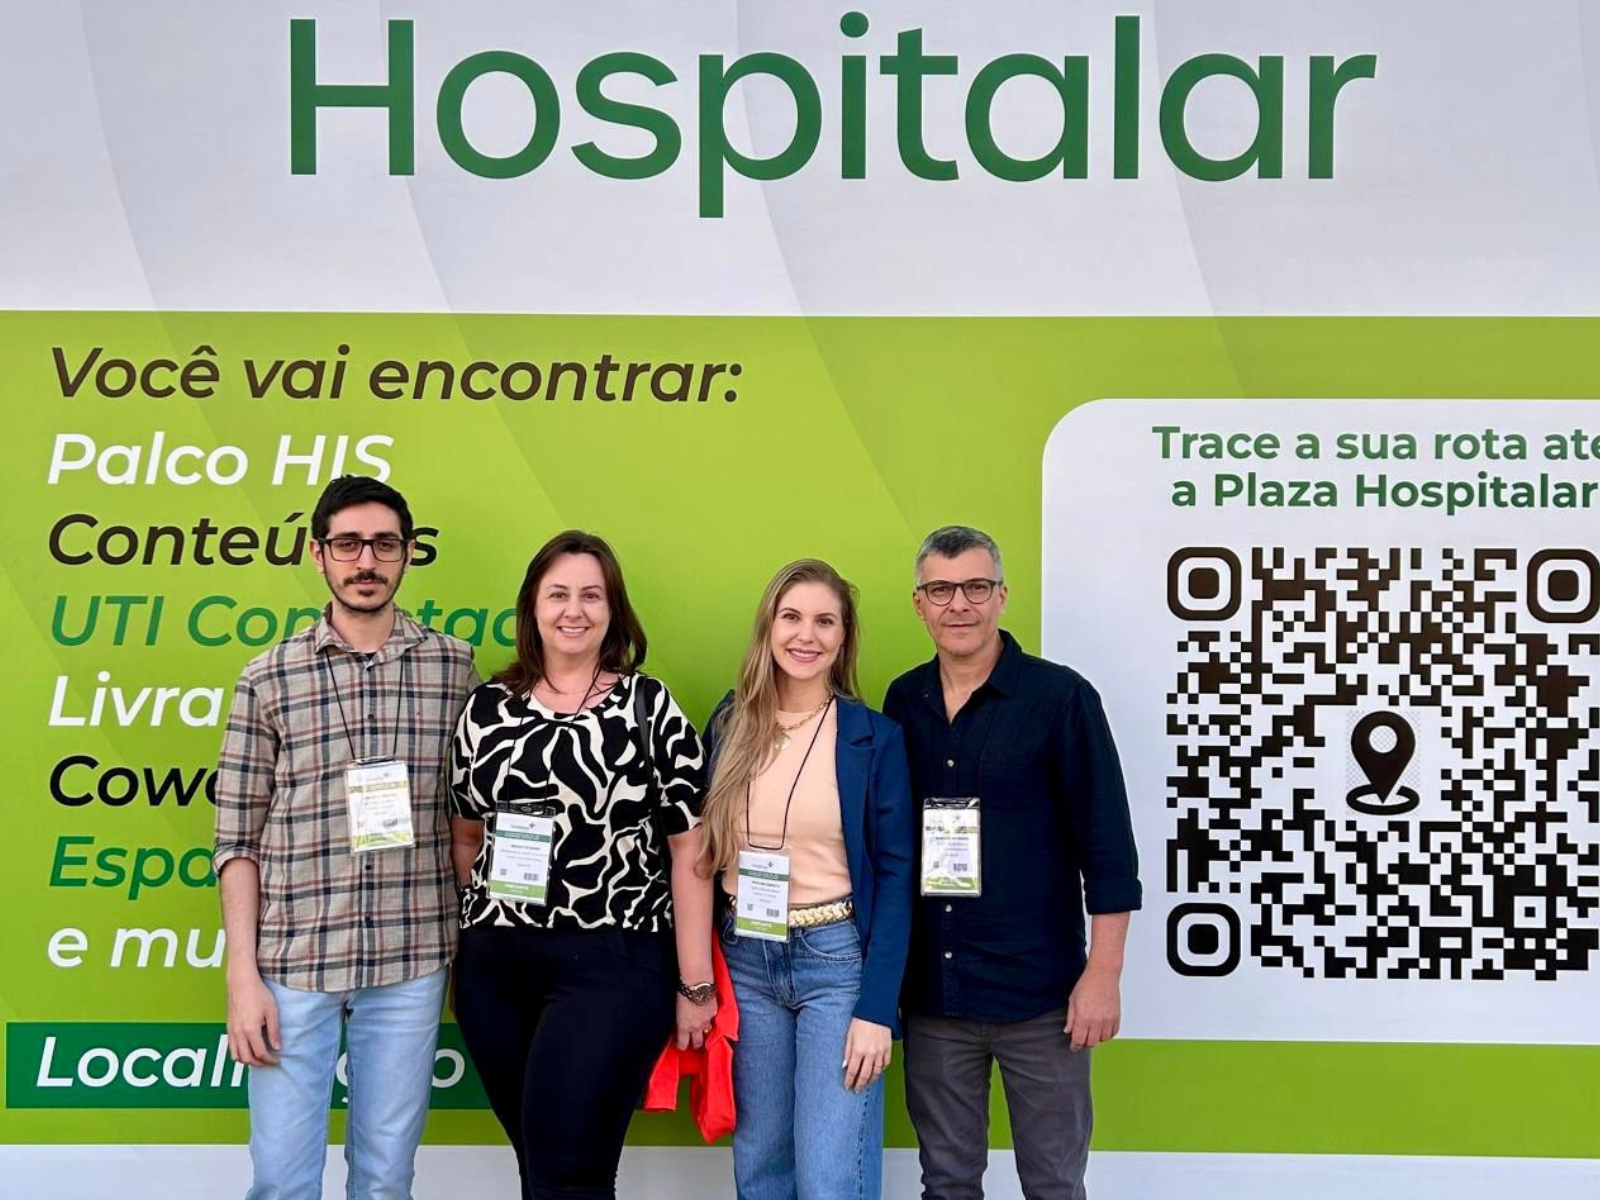 Santa Casa de Birigui marca presença na 29ª edição da feira Hospitalar, em São Paulo